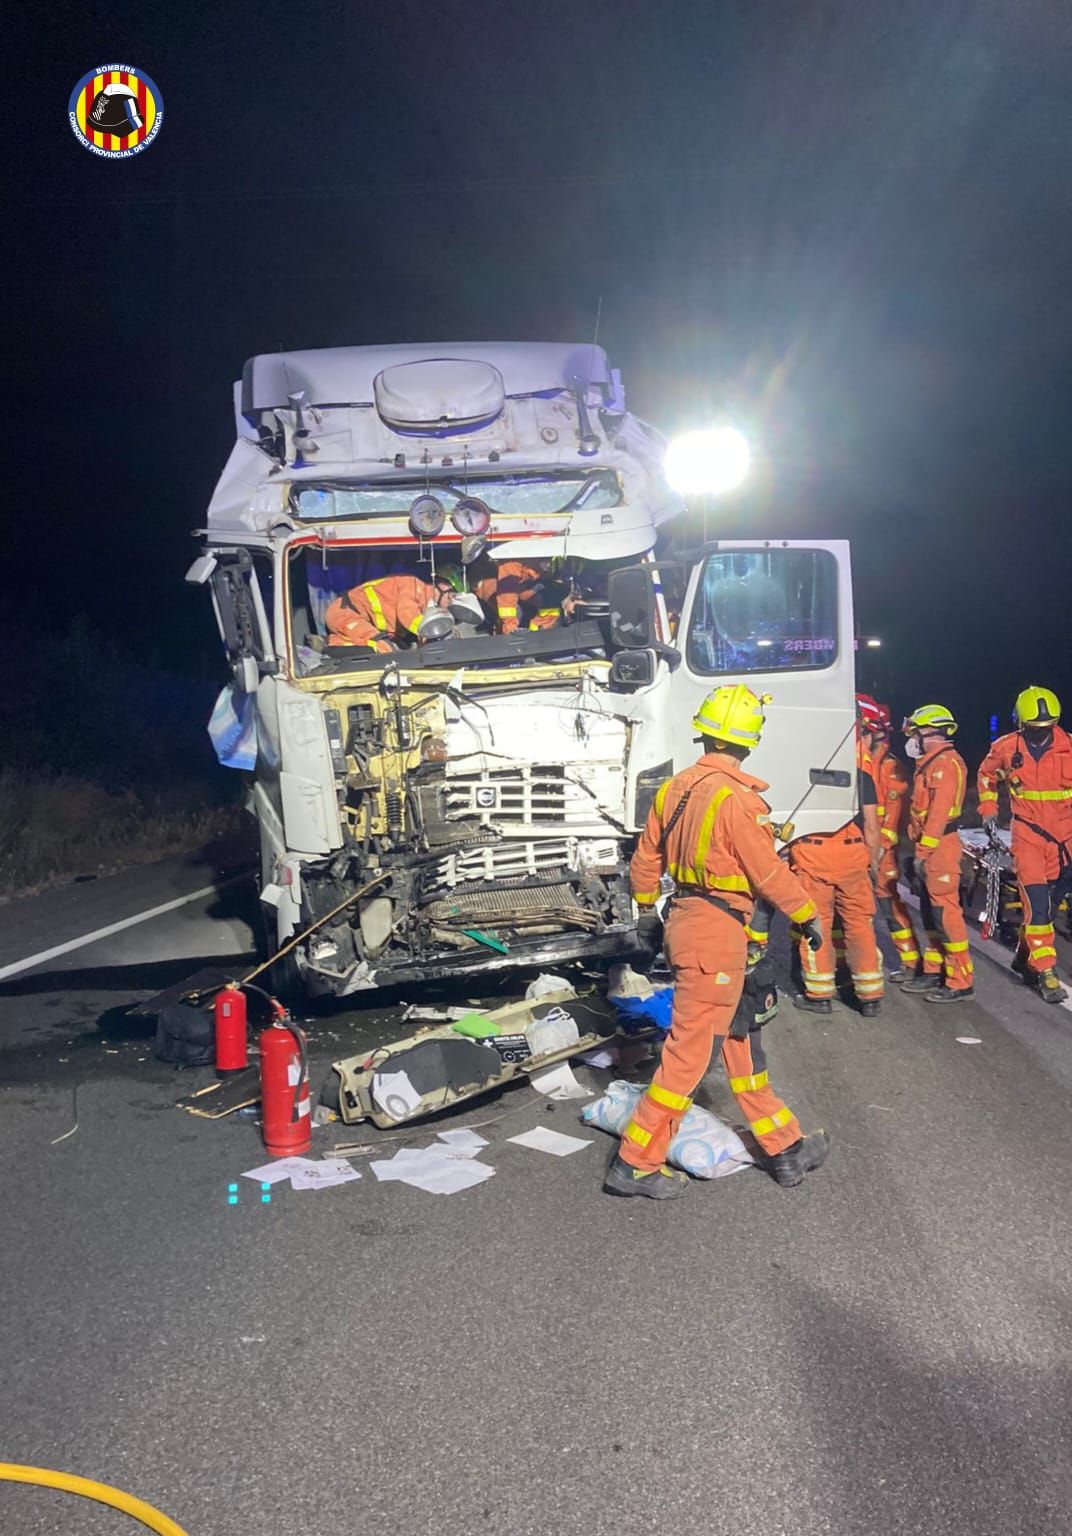 Accidente en Vallada: Dos camiones chocan en la A-35